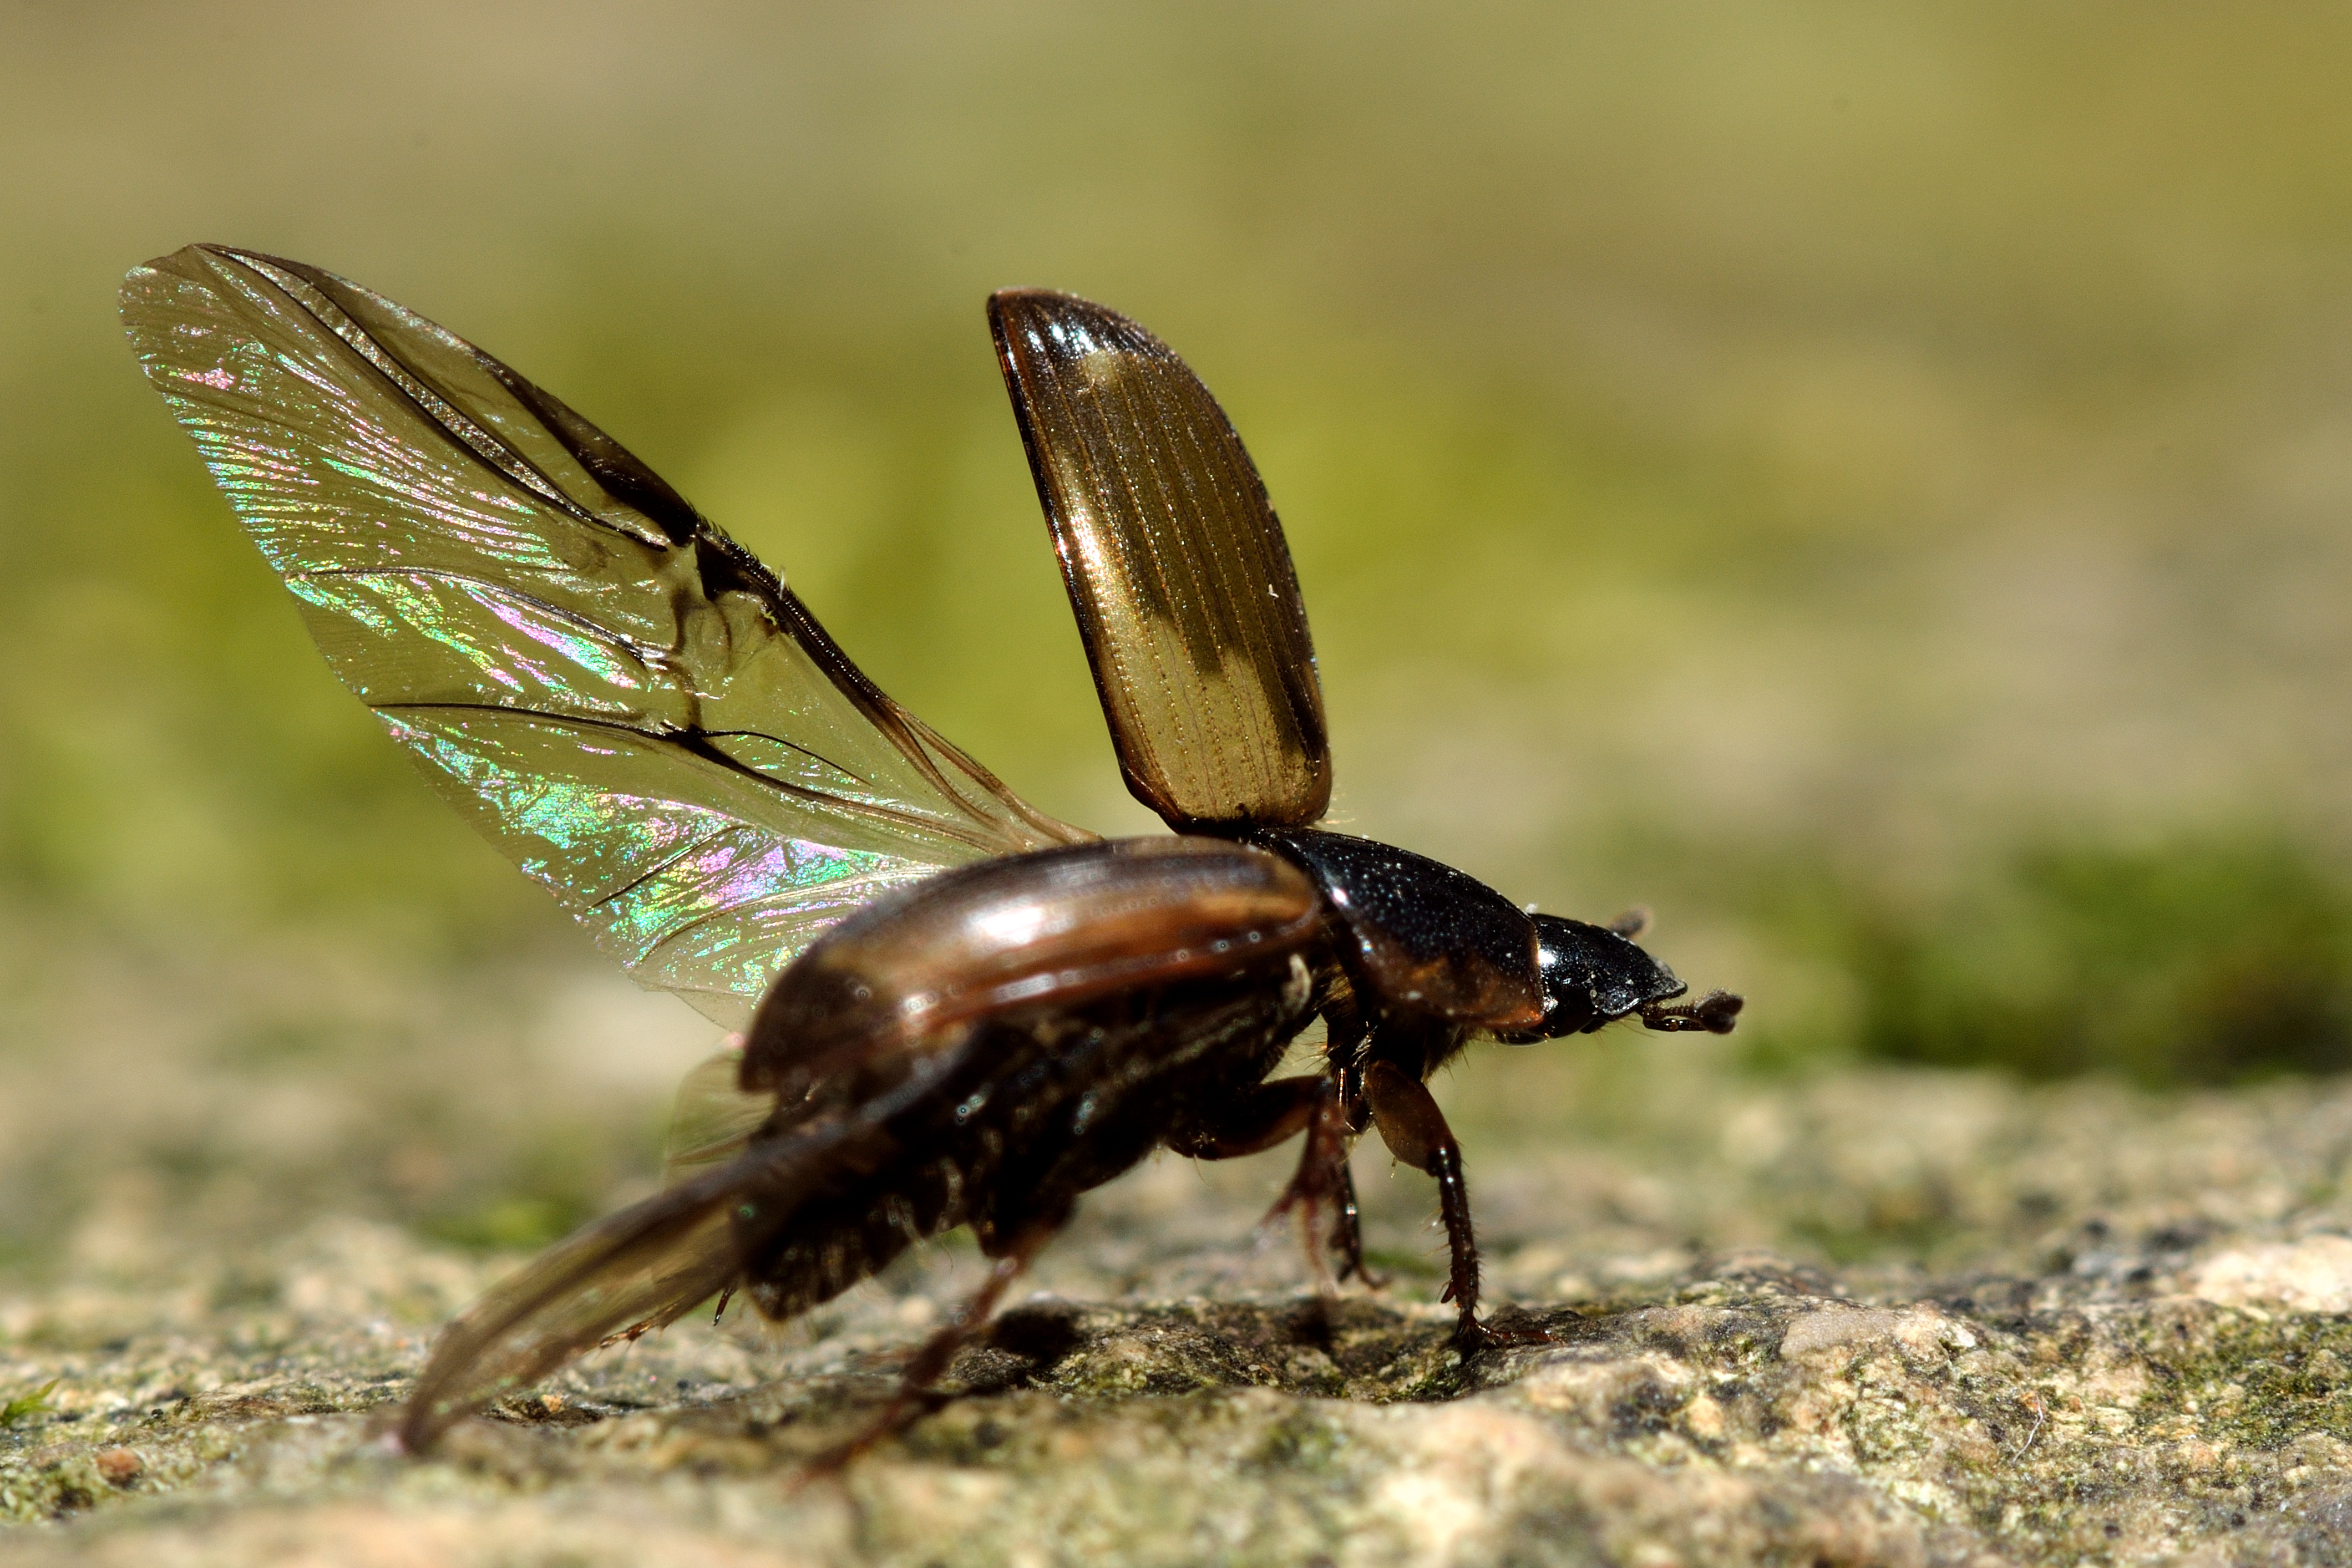 Le bousier Aphodius prodromus&nbsp;de la famille Scarabaeidae prenant son envol. Ses élytres protègent ses délicates ailes.&nbsp;©&nbsp;iredding01, Adobe Stock